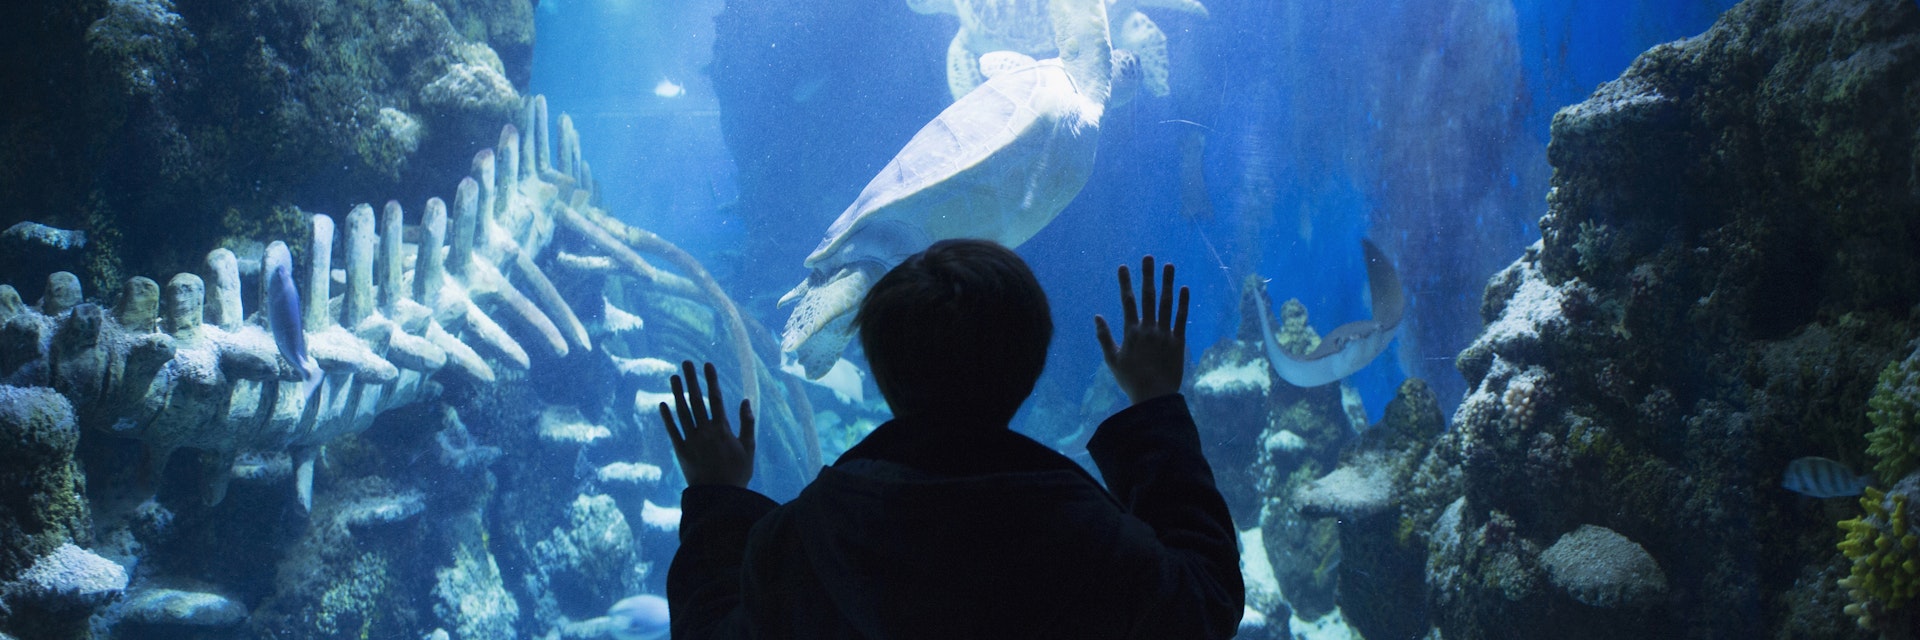 Boy admiring sea life in aquarium